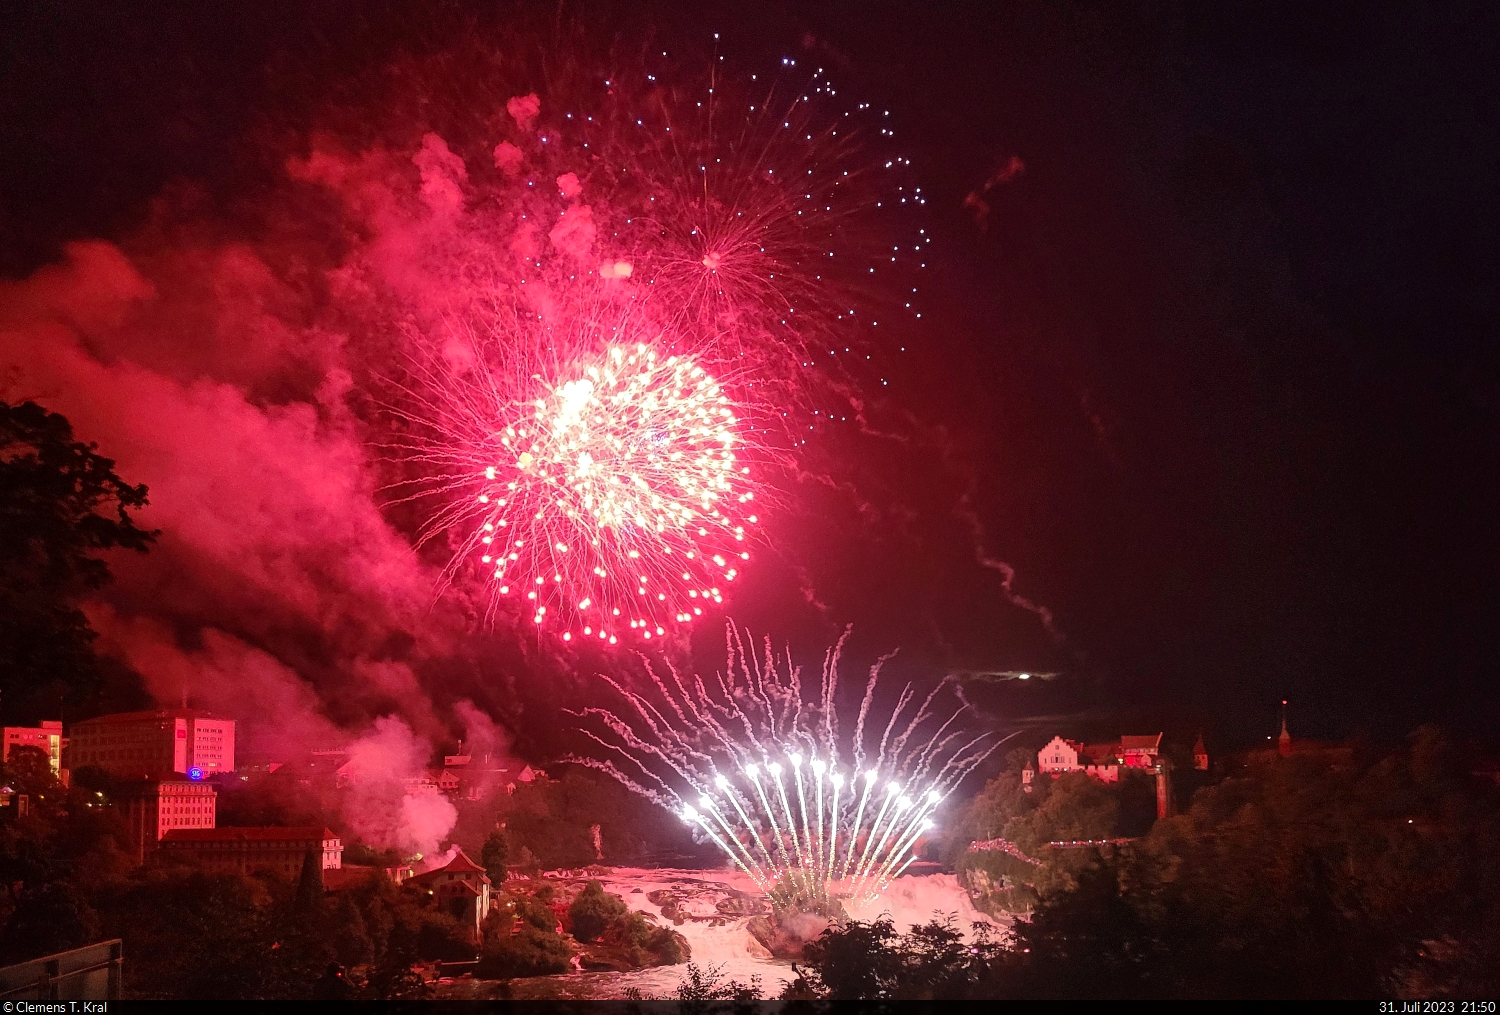  Fire on the Rocks : groes Feuerwerk ber dem Rheinfall im Vorfeld des Schweizer Nationalfeiertags am 1. August. Zwanzig Minuten lang leuchtete der grte Wasserfall Europas in allen mglichen Farben.

🕓 31.7.2023 | 21:50 Uhr